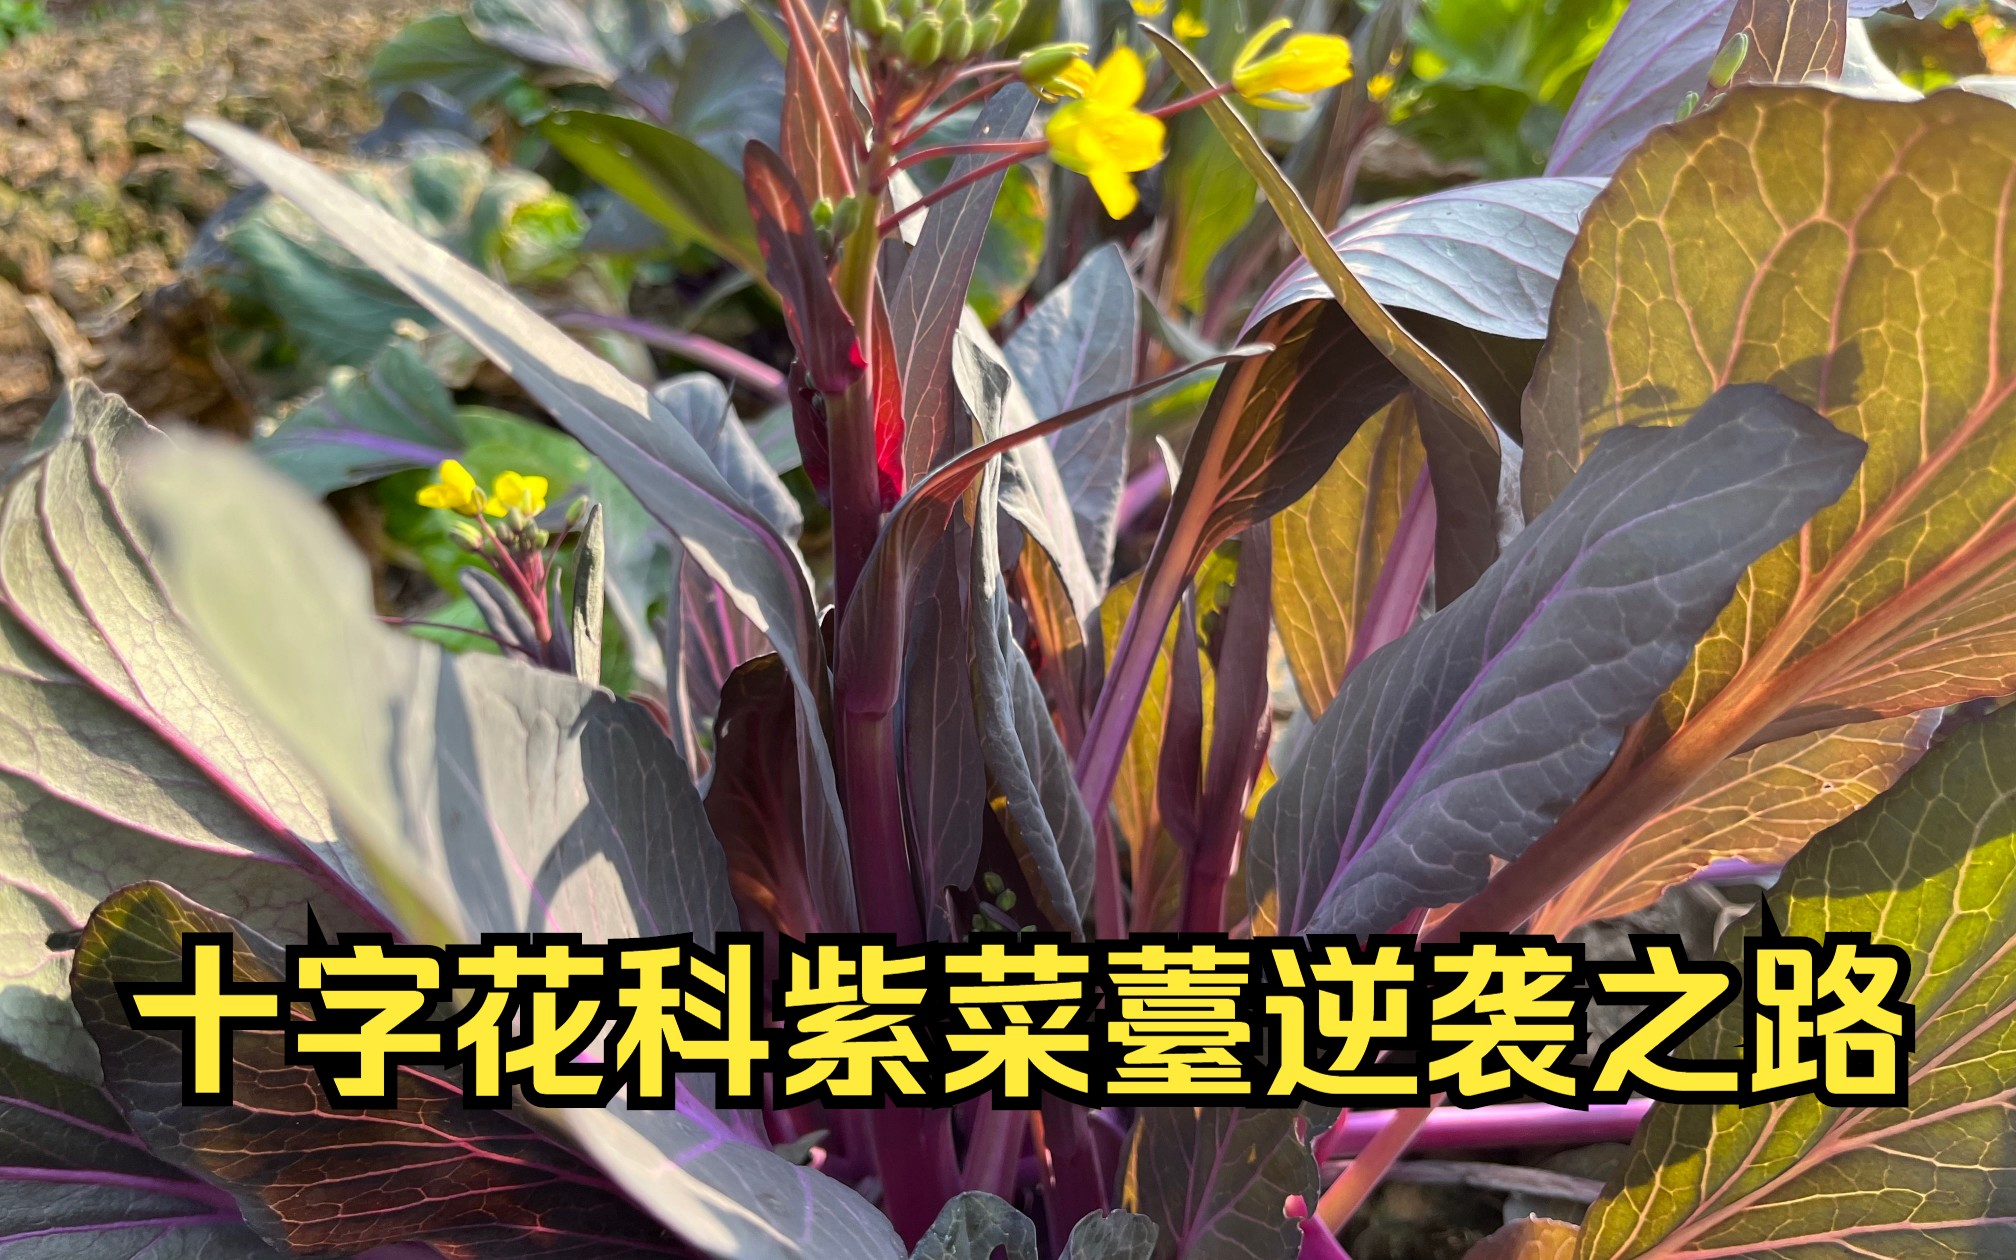 冬の京野菜『畑菜』は美味しくて安くて栄養豊富で使えるヤツ – 京都ストーリー